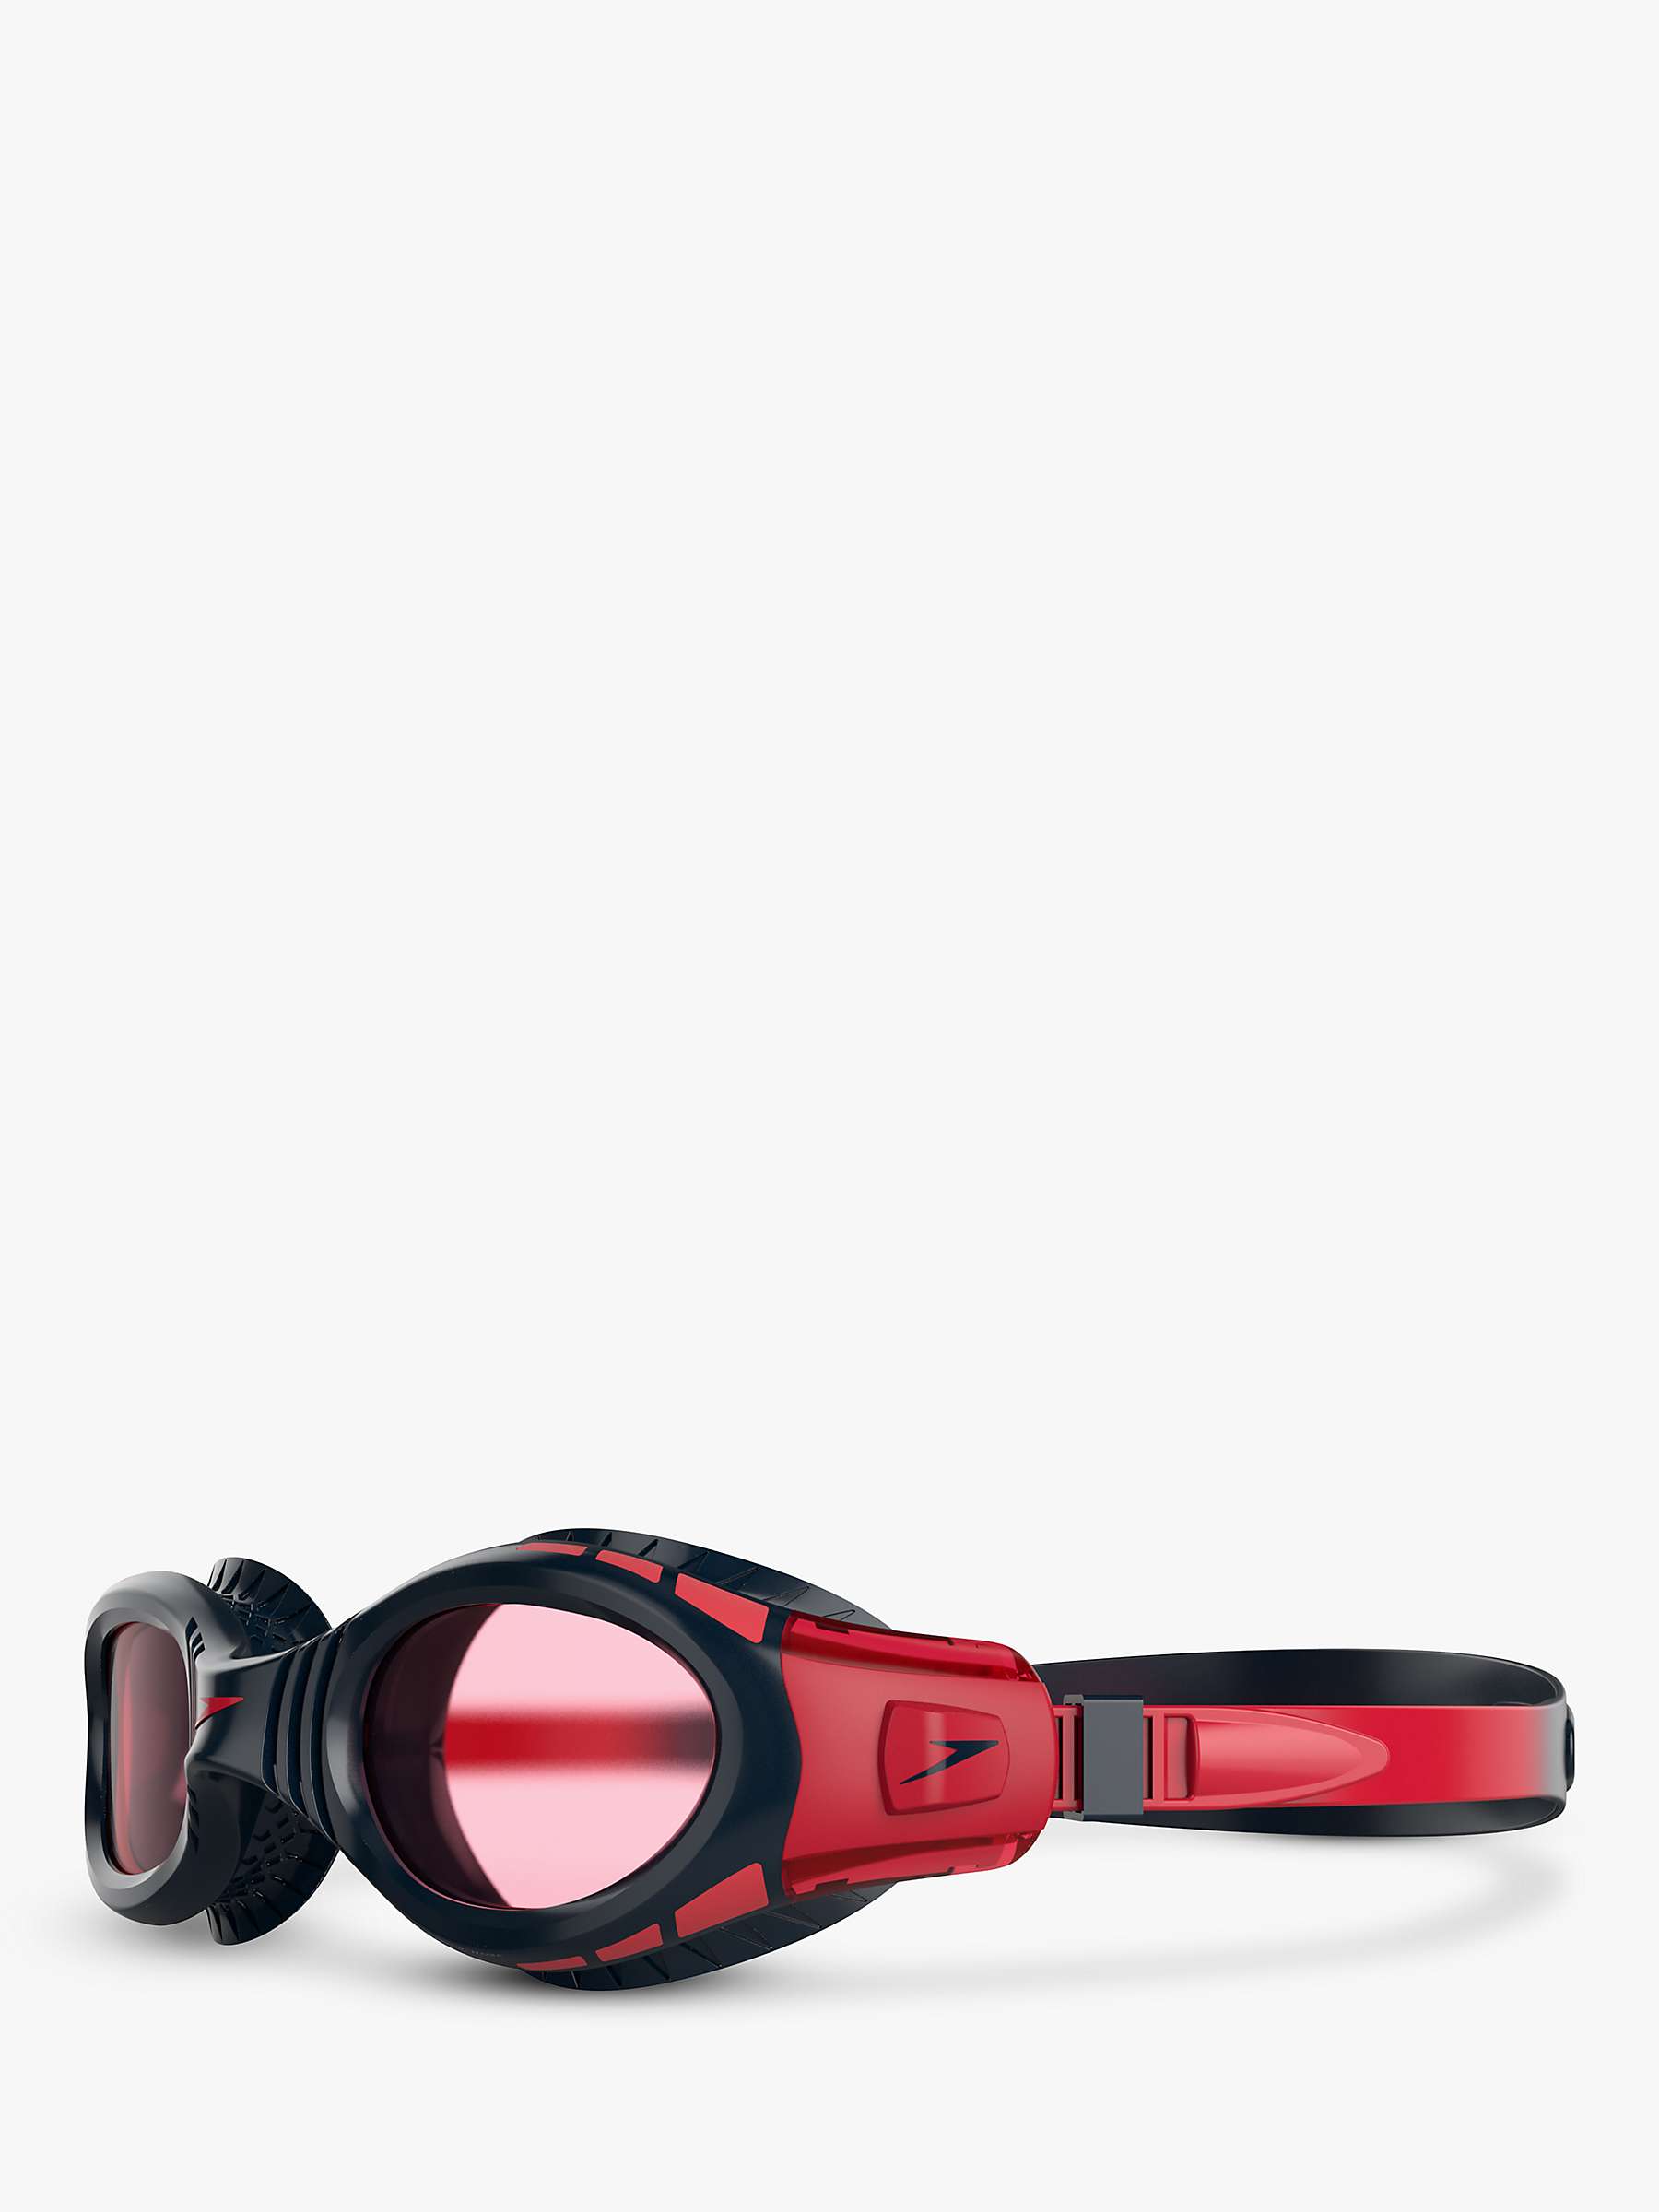 Buy Speedo Junior Futura Biofuse Flexiseal Swimming Goggles, Red Mid Online at johnlewis.com